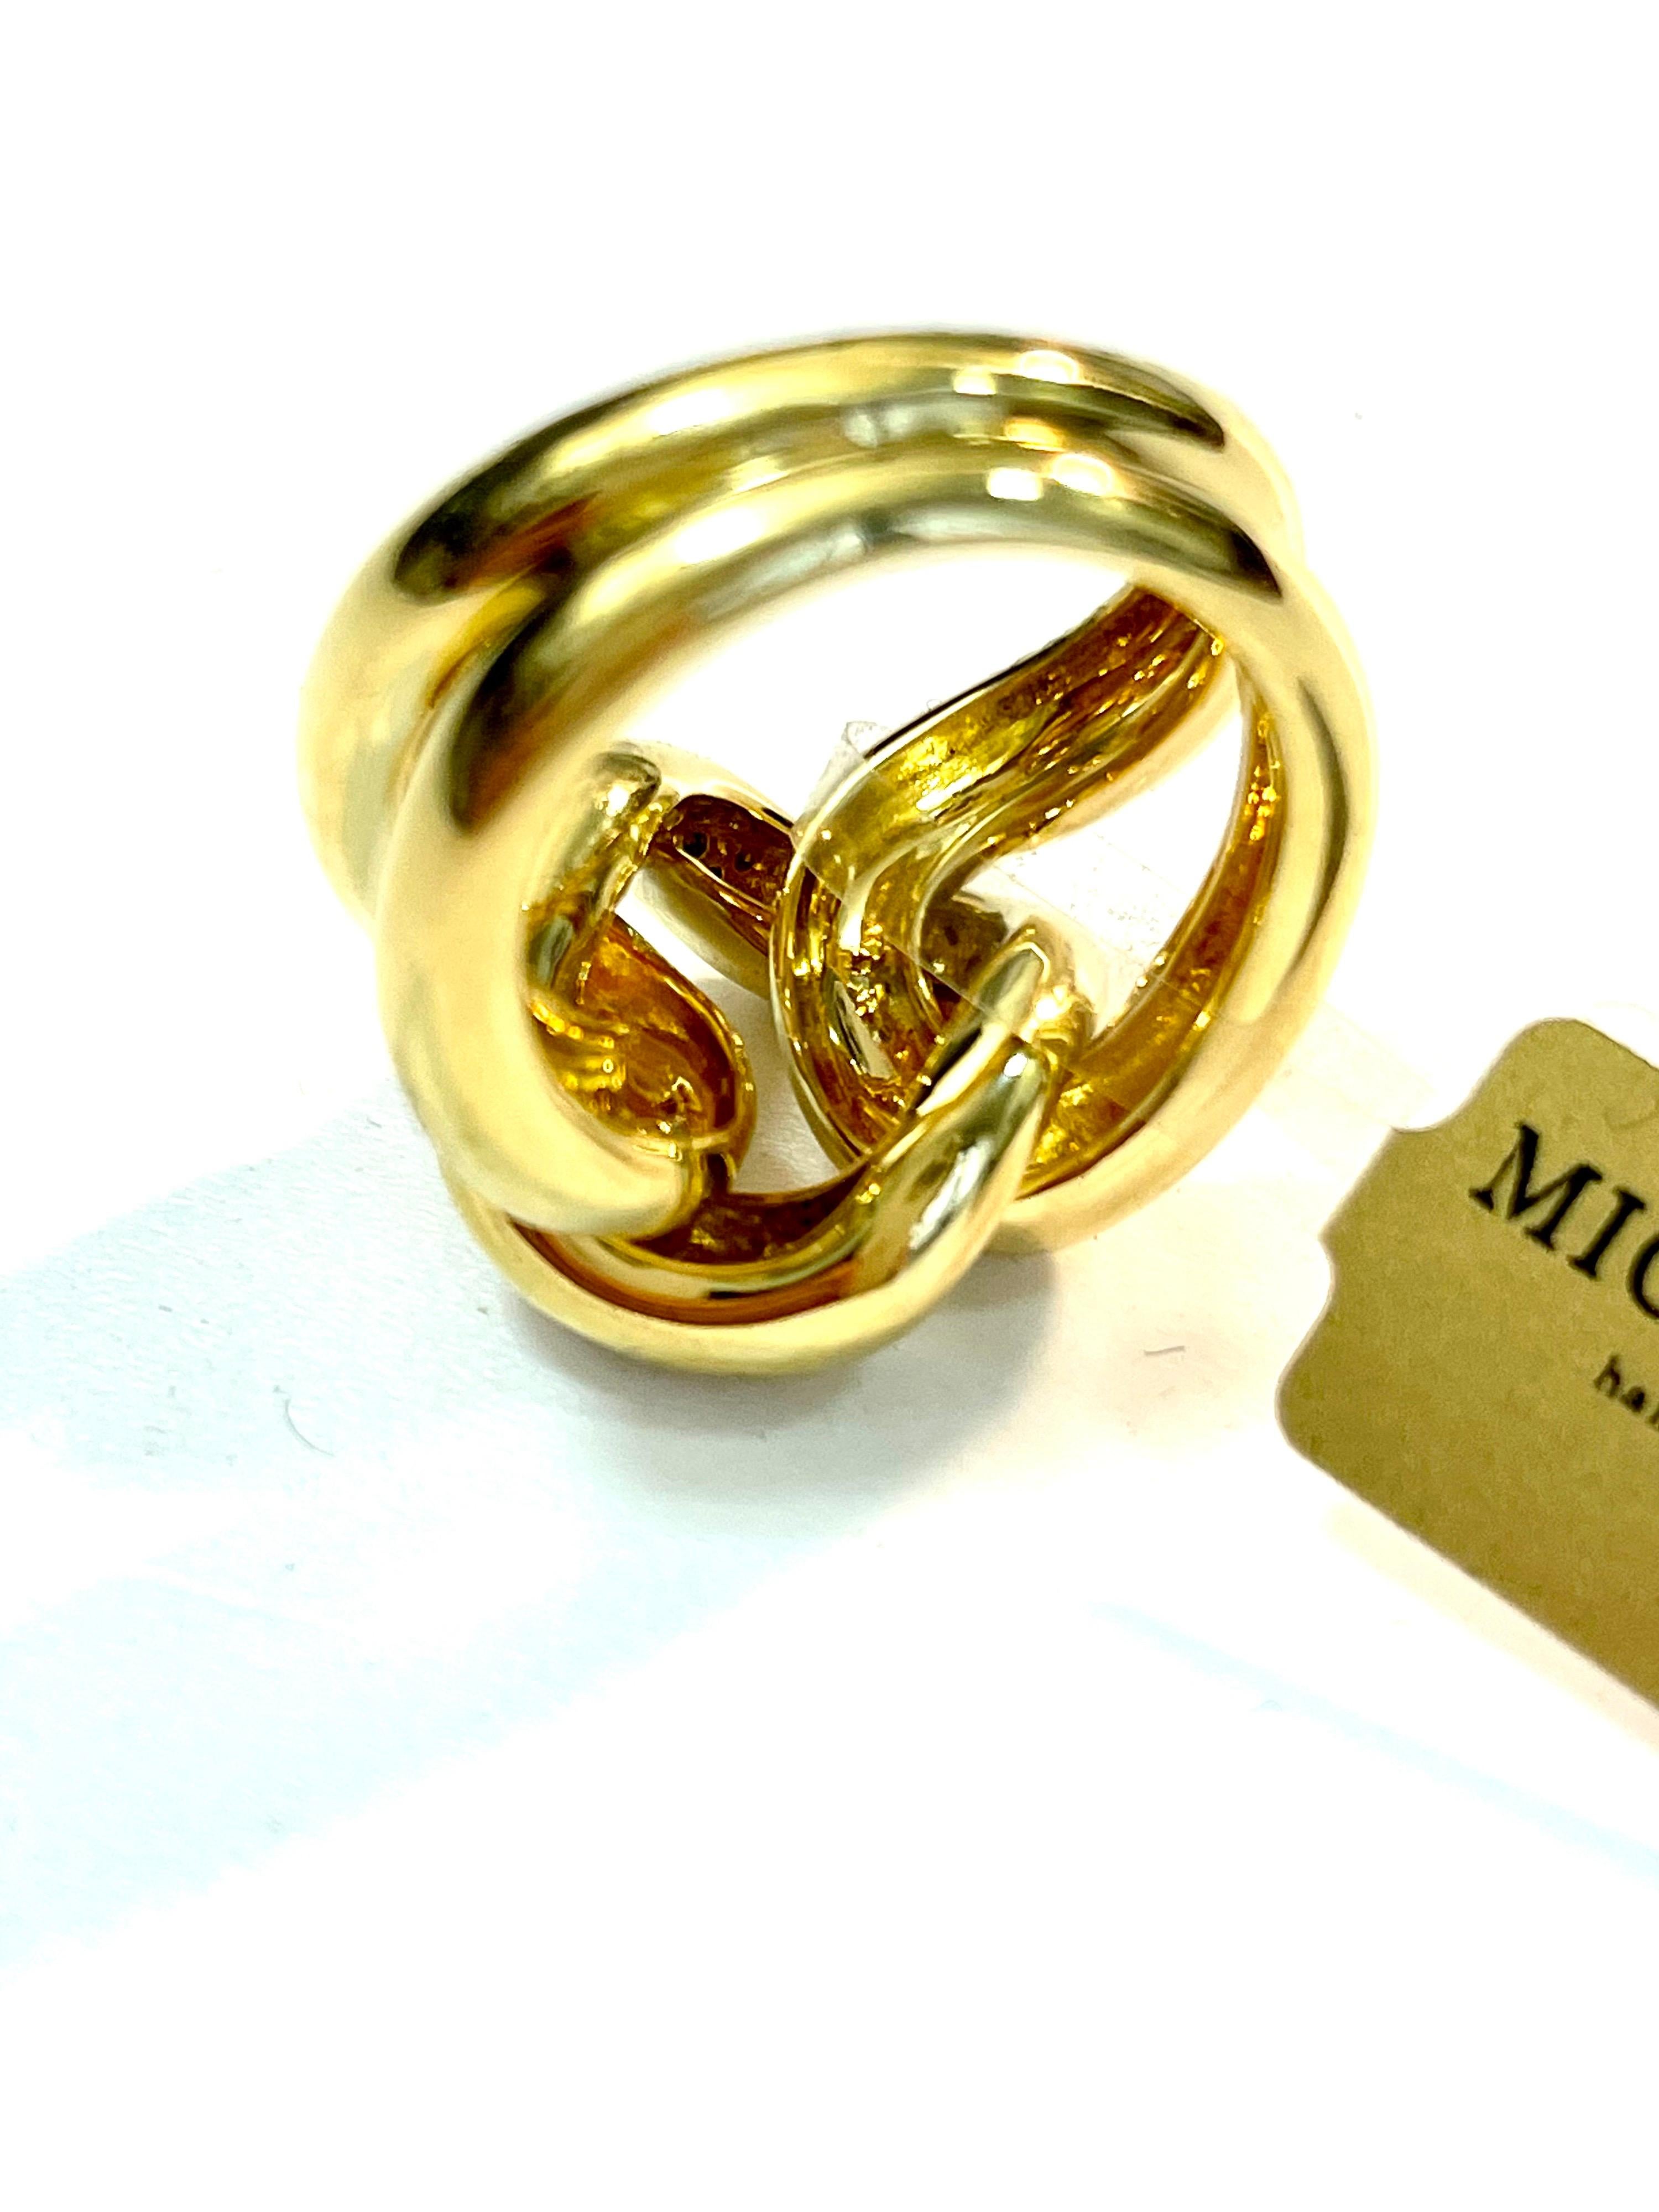 Bague groumette classique en or jaune 18 carats 

Il s'agit de la collection emblématique de Micheletto

le poids total de l'or est de  gr 17.10
TIMBRE : 10 MI ITALIE 750
TAILLE 6
La série complète est disponible.
